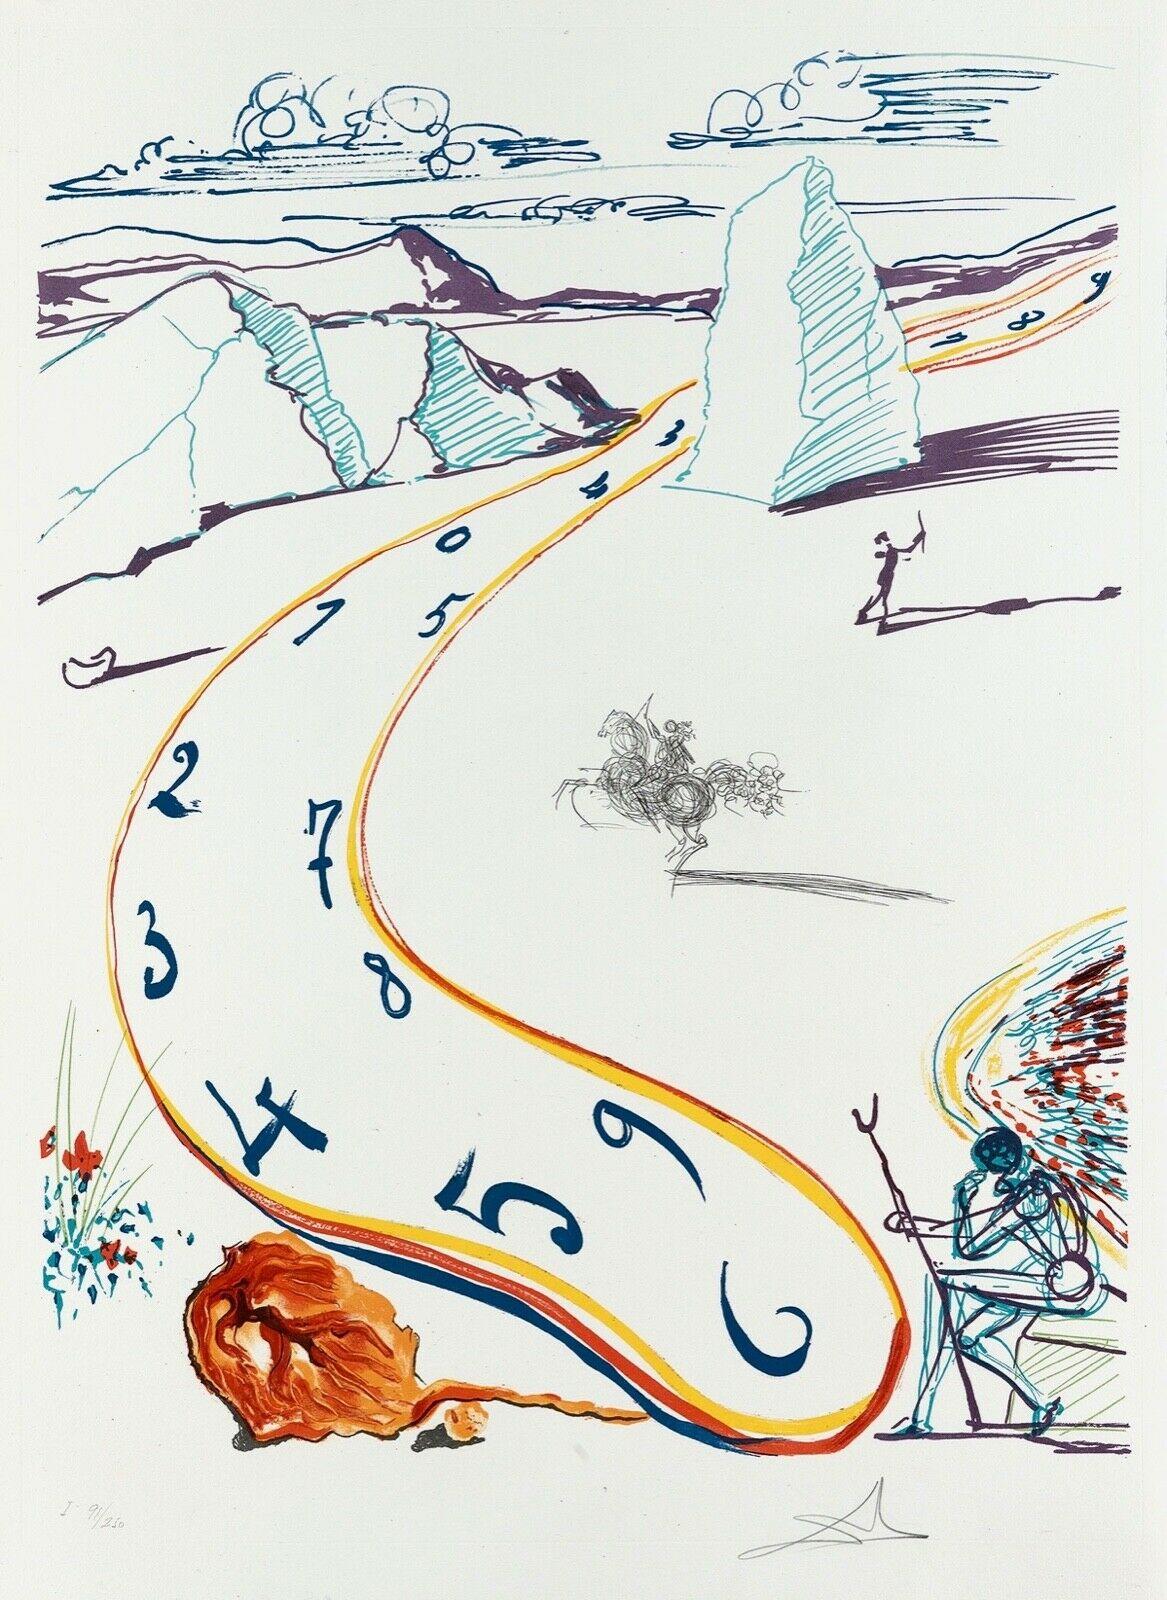 Salvador Dalí Landscape Print - Melting Space-Time, Salvador Dali